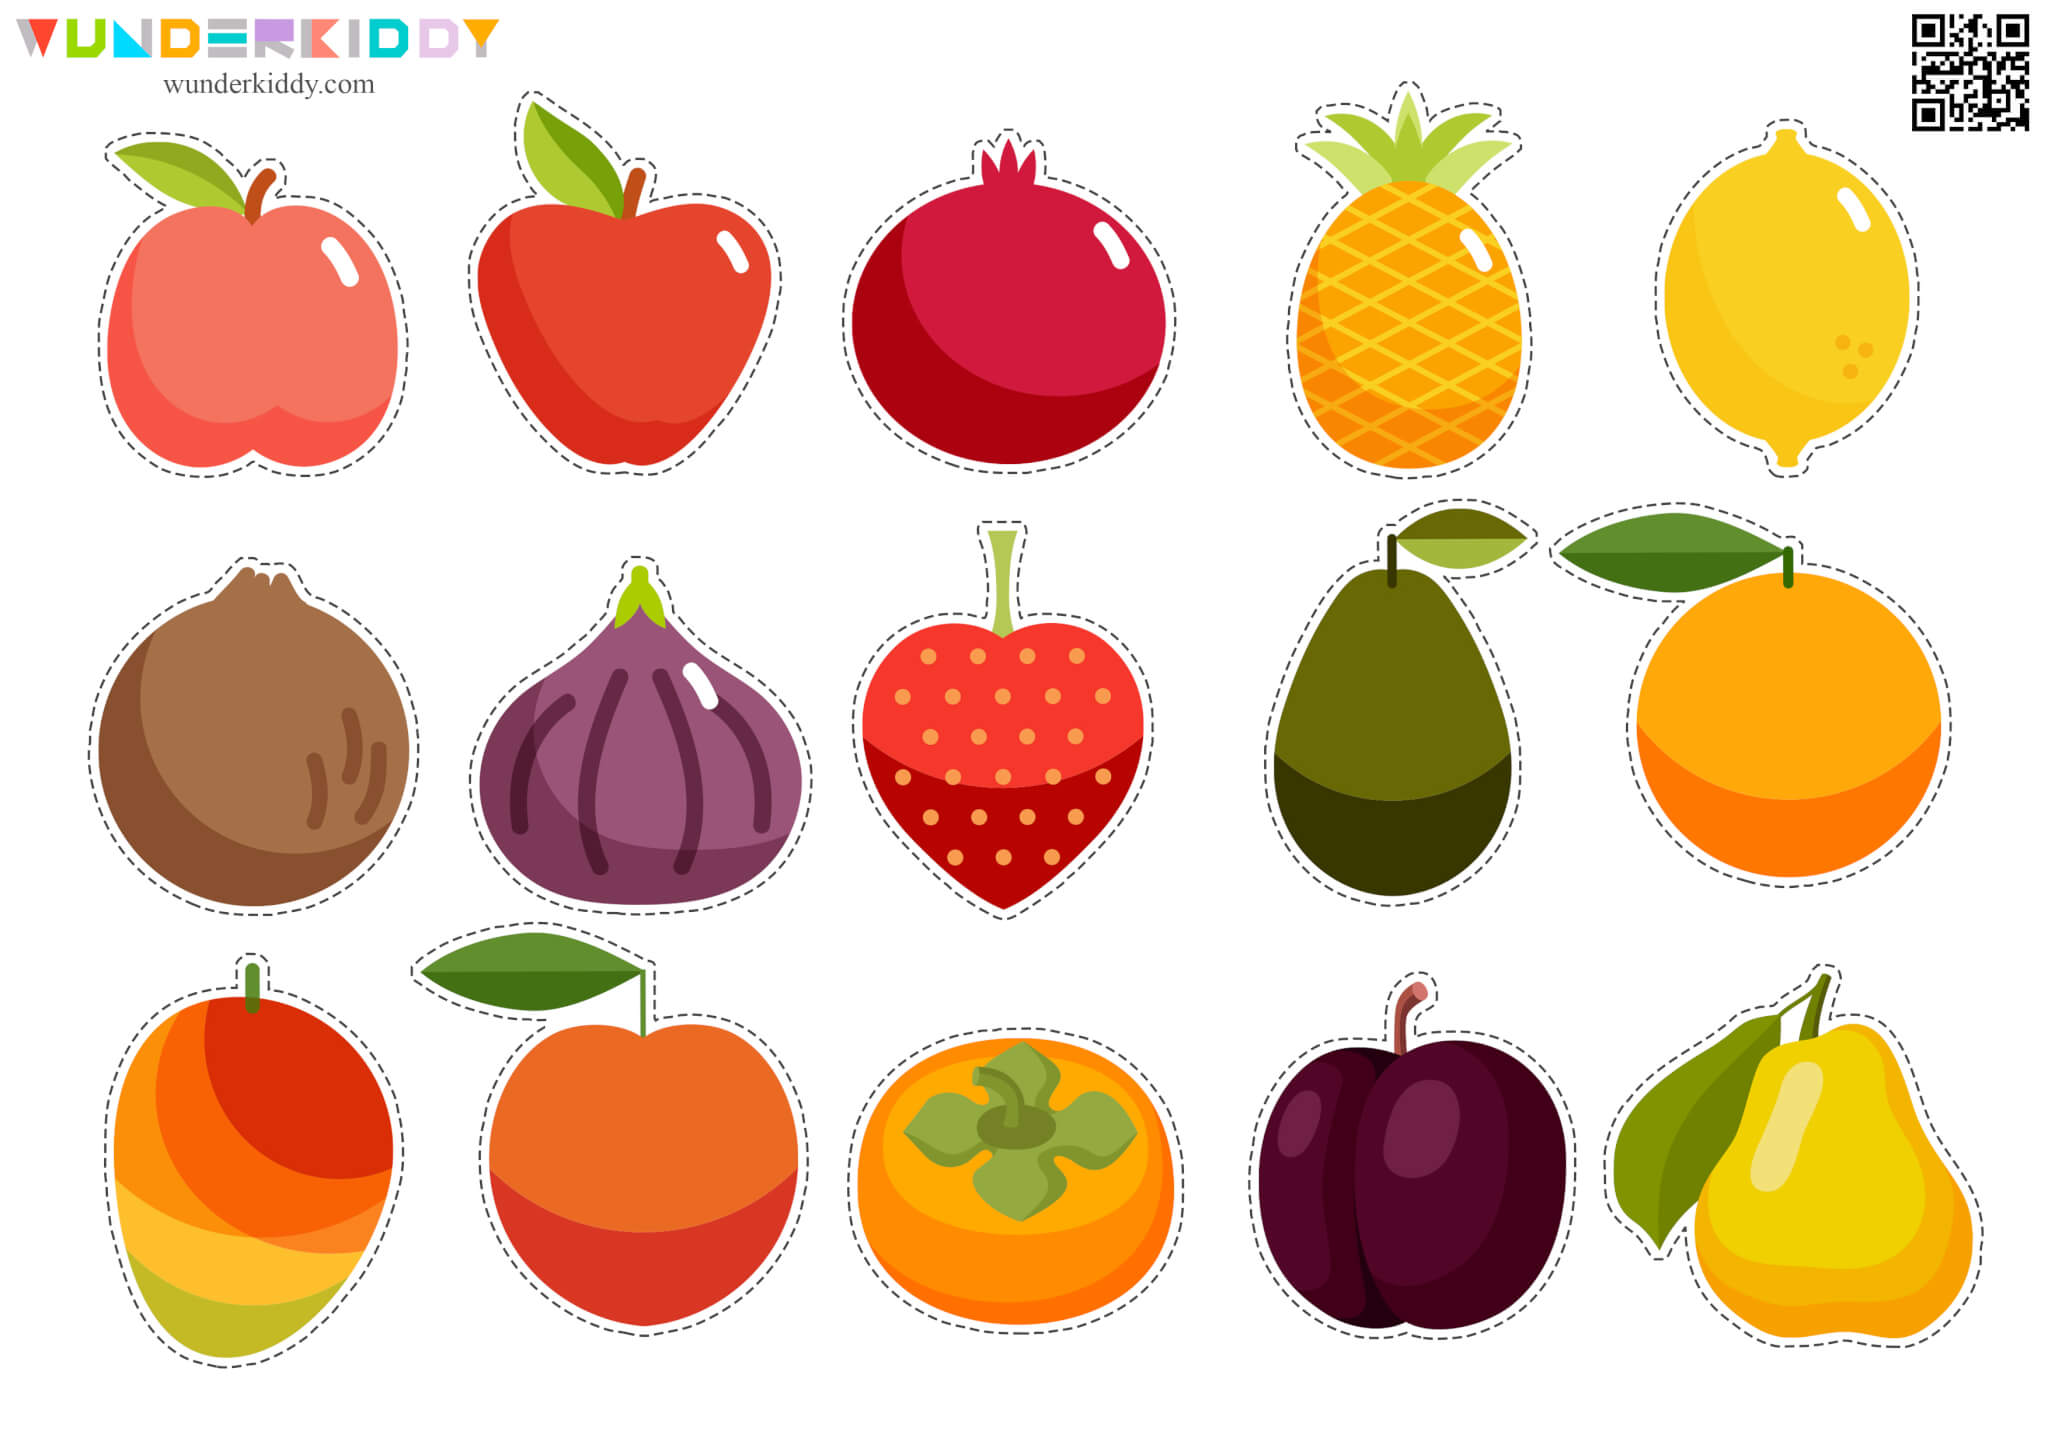 Fruit Slices File Folder Game for Kids - Image 3